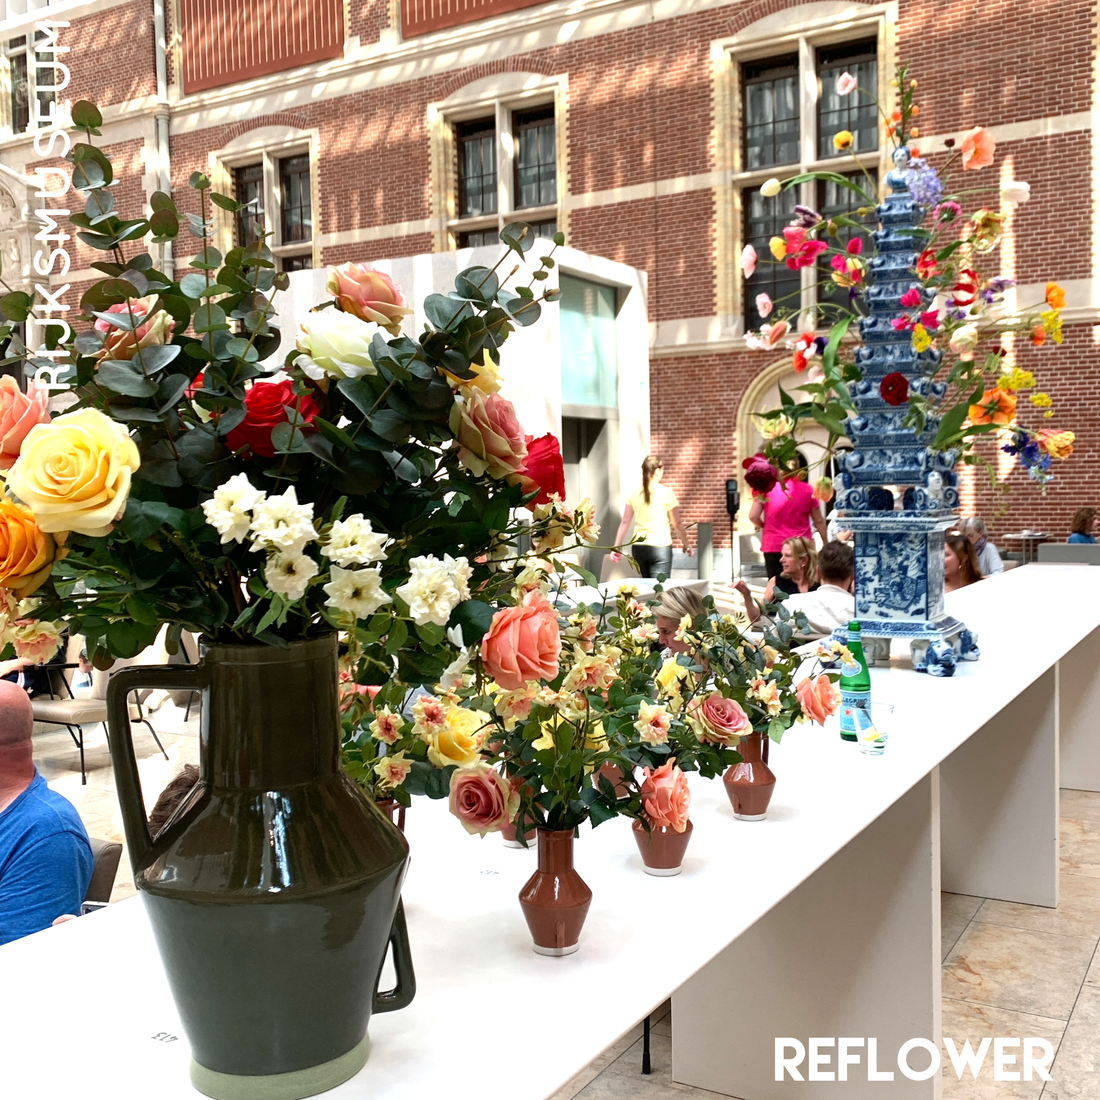 Reflower x Rijksmuseum